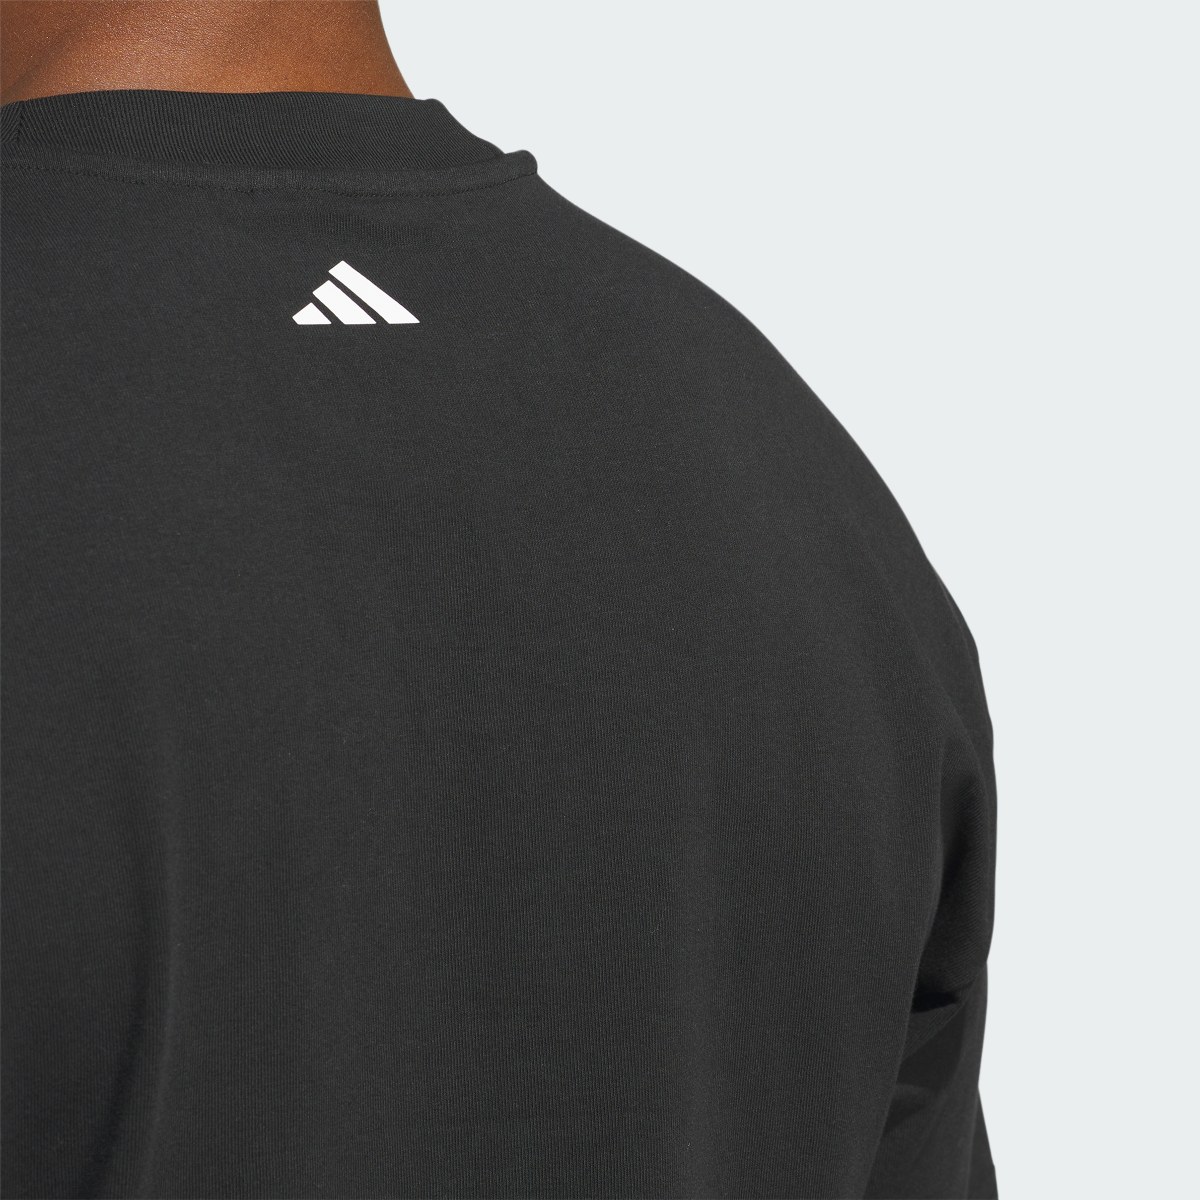 Adidas T-shirt adidas Basketball Select. 7